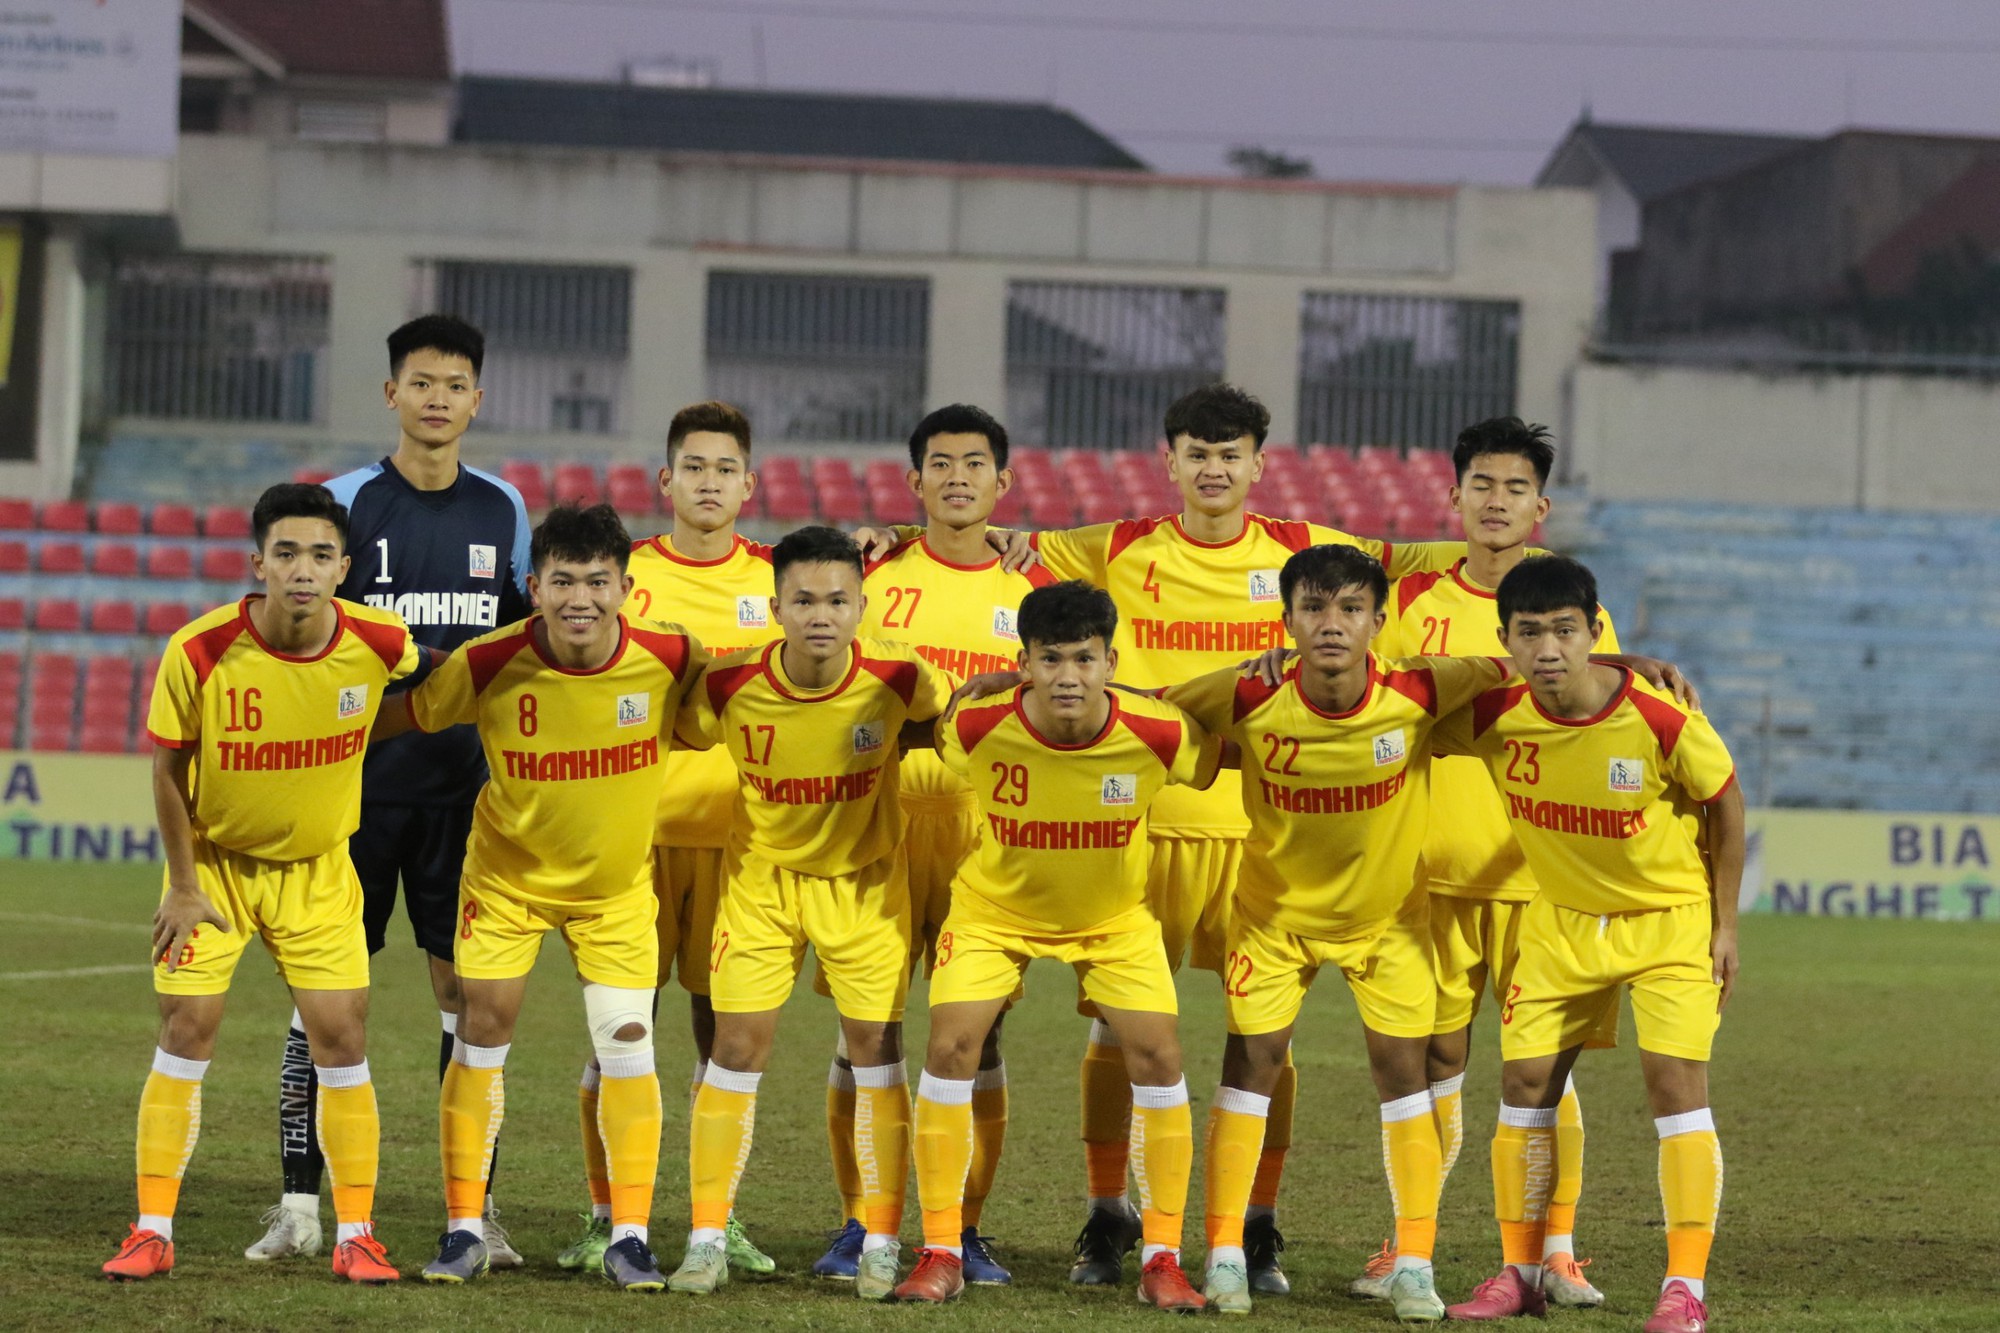 Giống U21 SLNA, U21 Gia Định bị loại khỏi U21 Quốc gia vì dùng cầu thủ sai quy định - Ảnh 1.